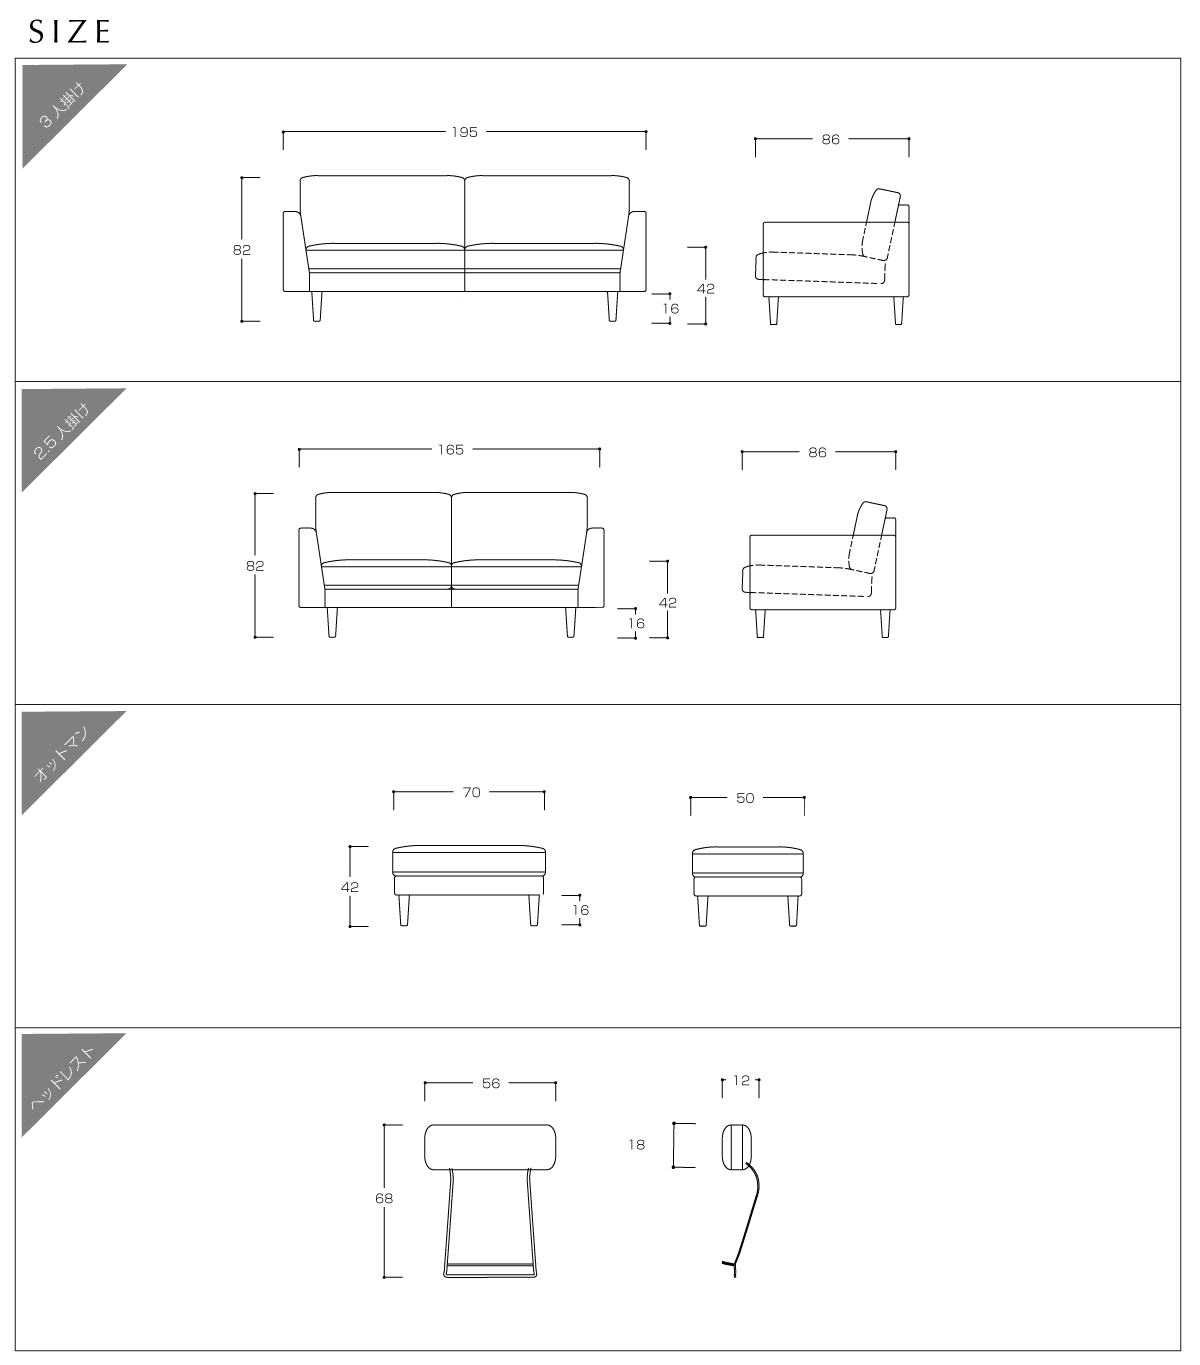 ソファのサイズ表